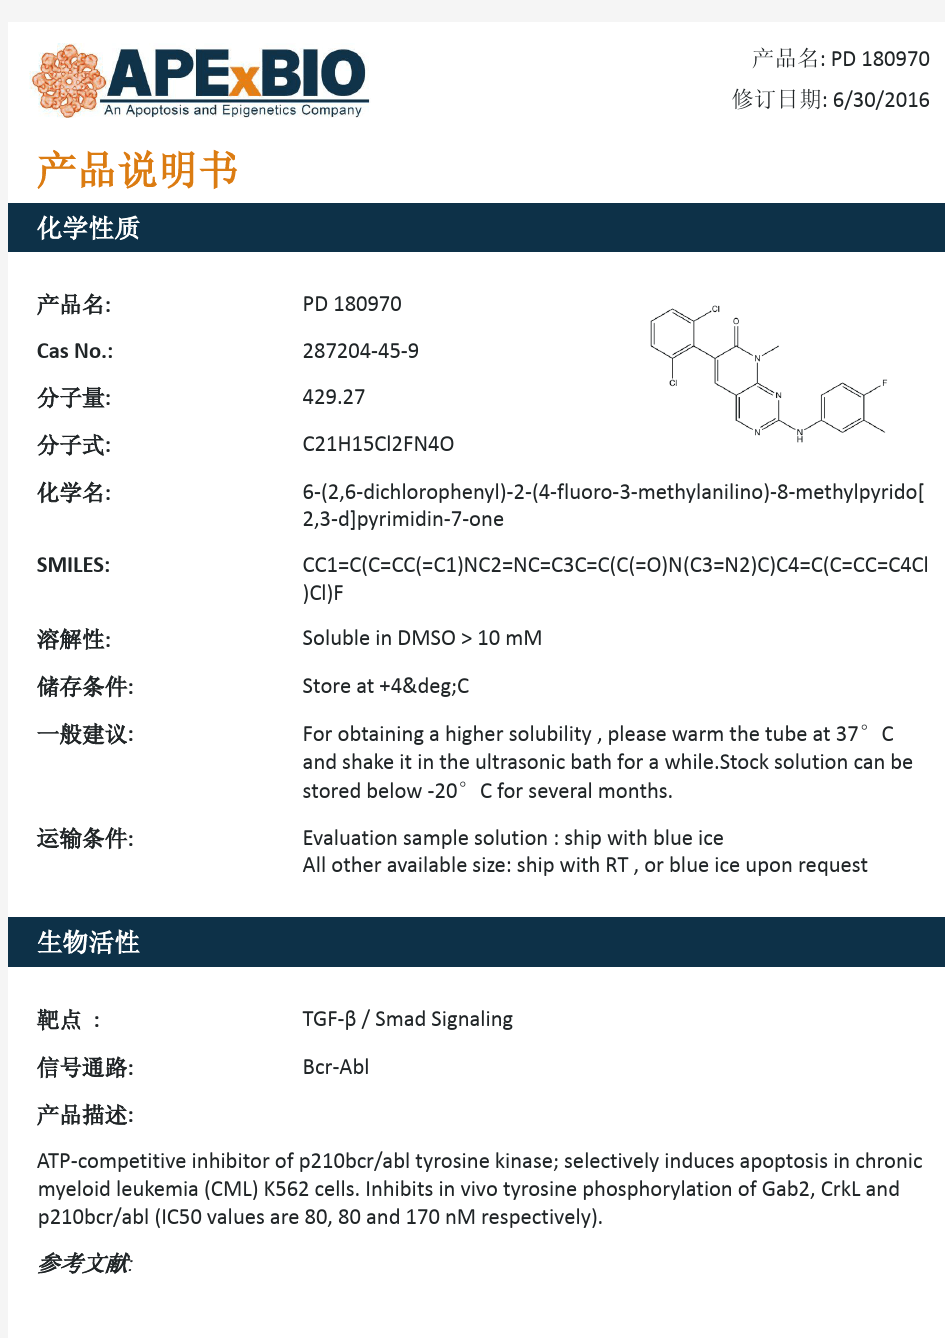 PD 180970_P210 bcrabl酪氨酸激酶抑制剂_287204-45-9_Apexbio